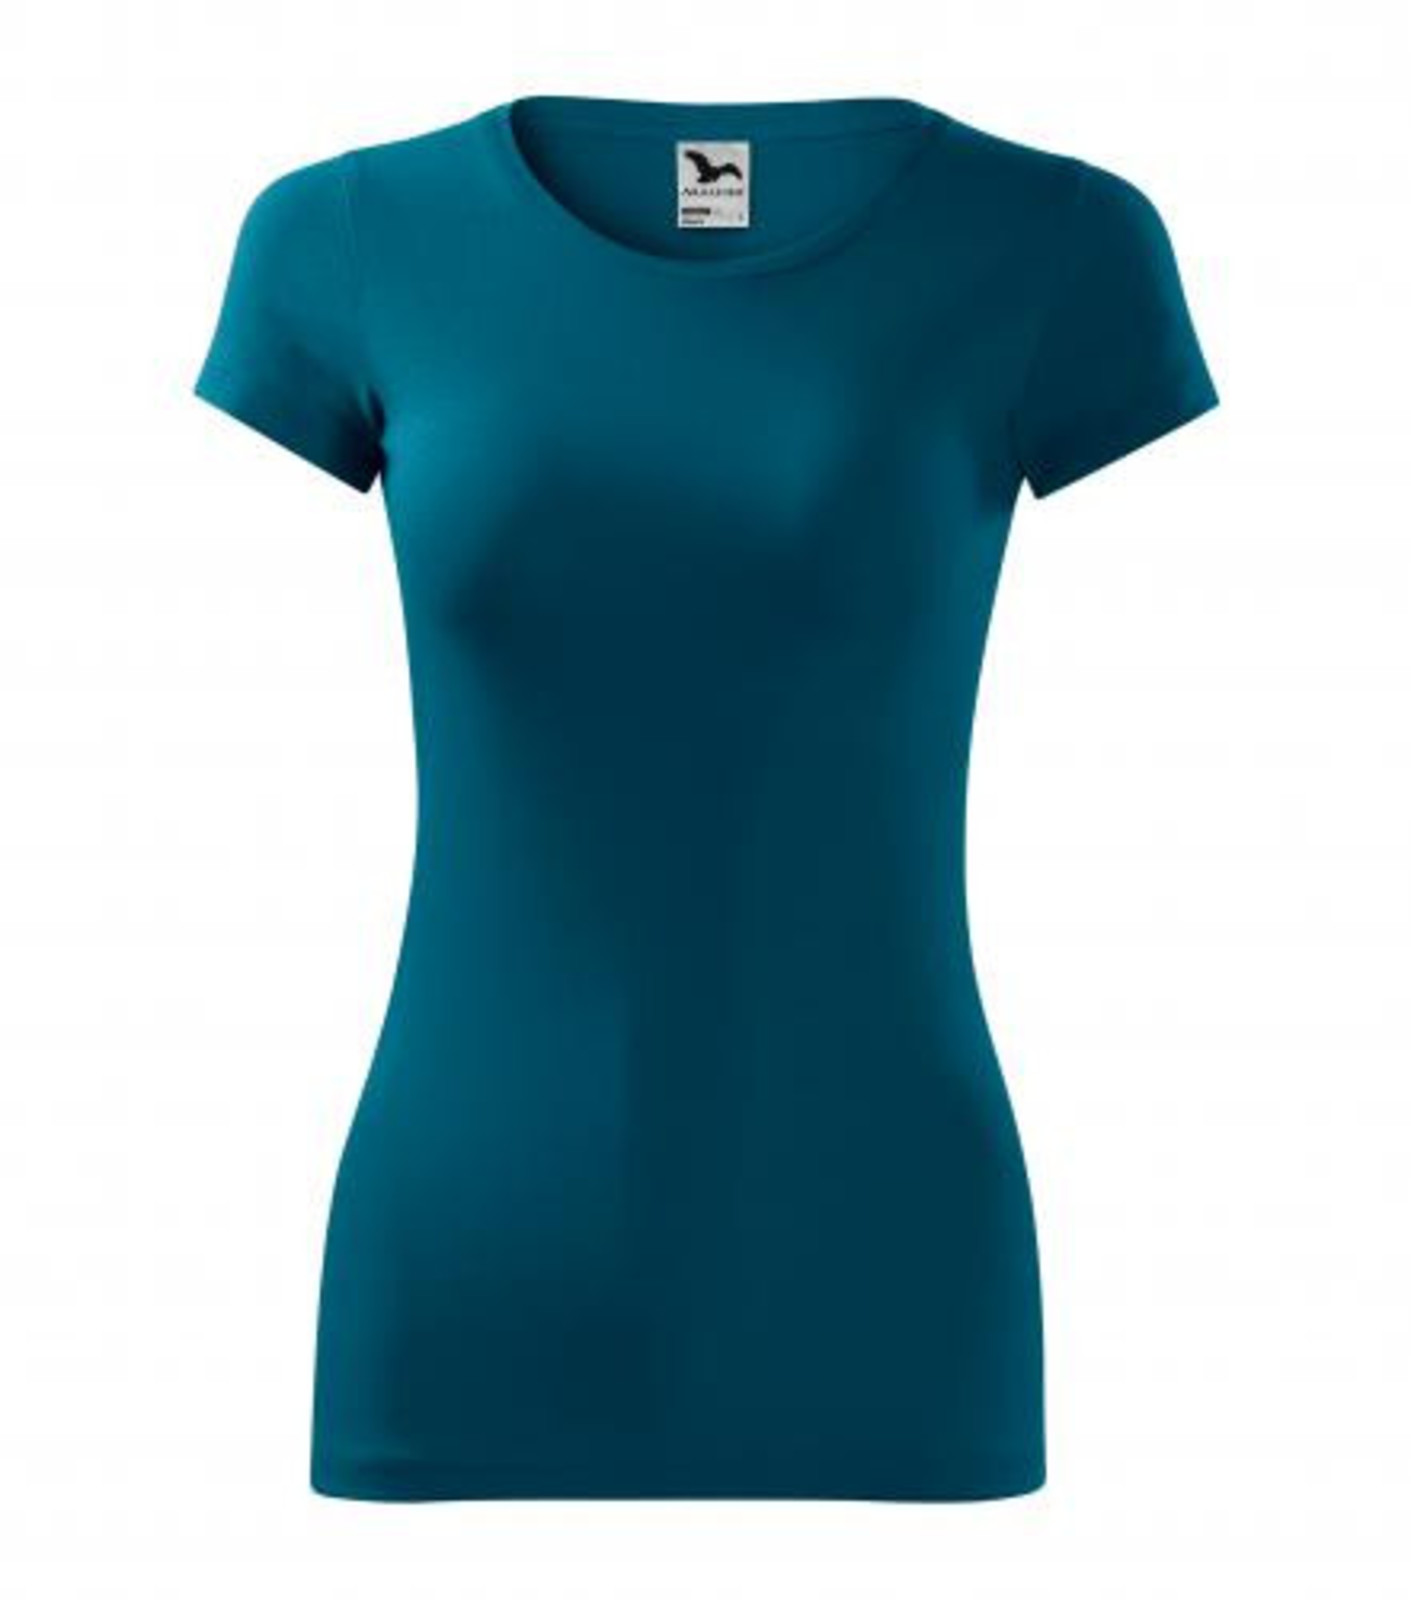 Dámske tričko Adler Glance 141 - veľkosť: S, farba: petrolejová modrá